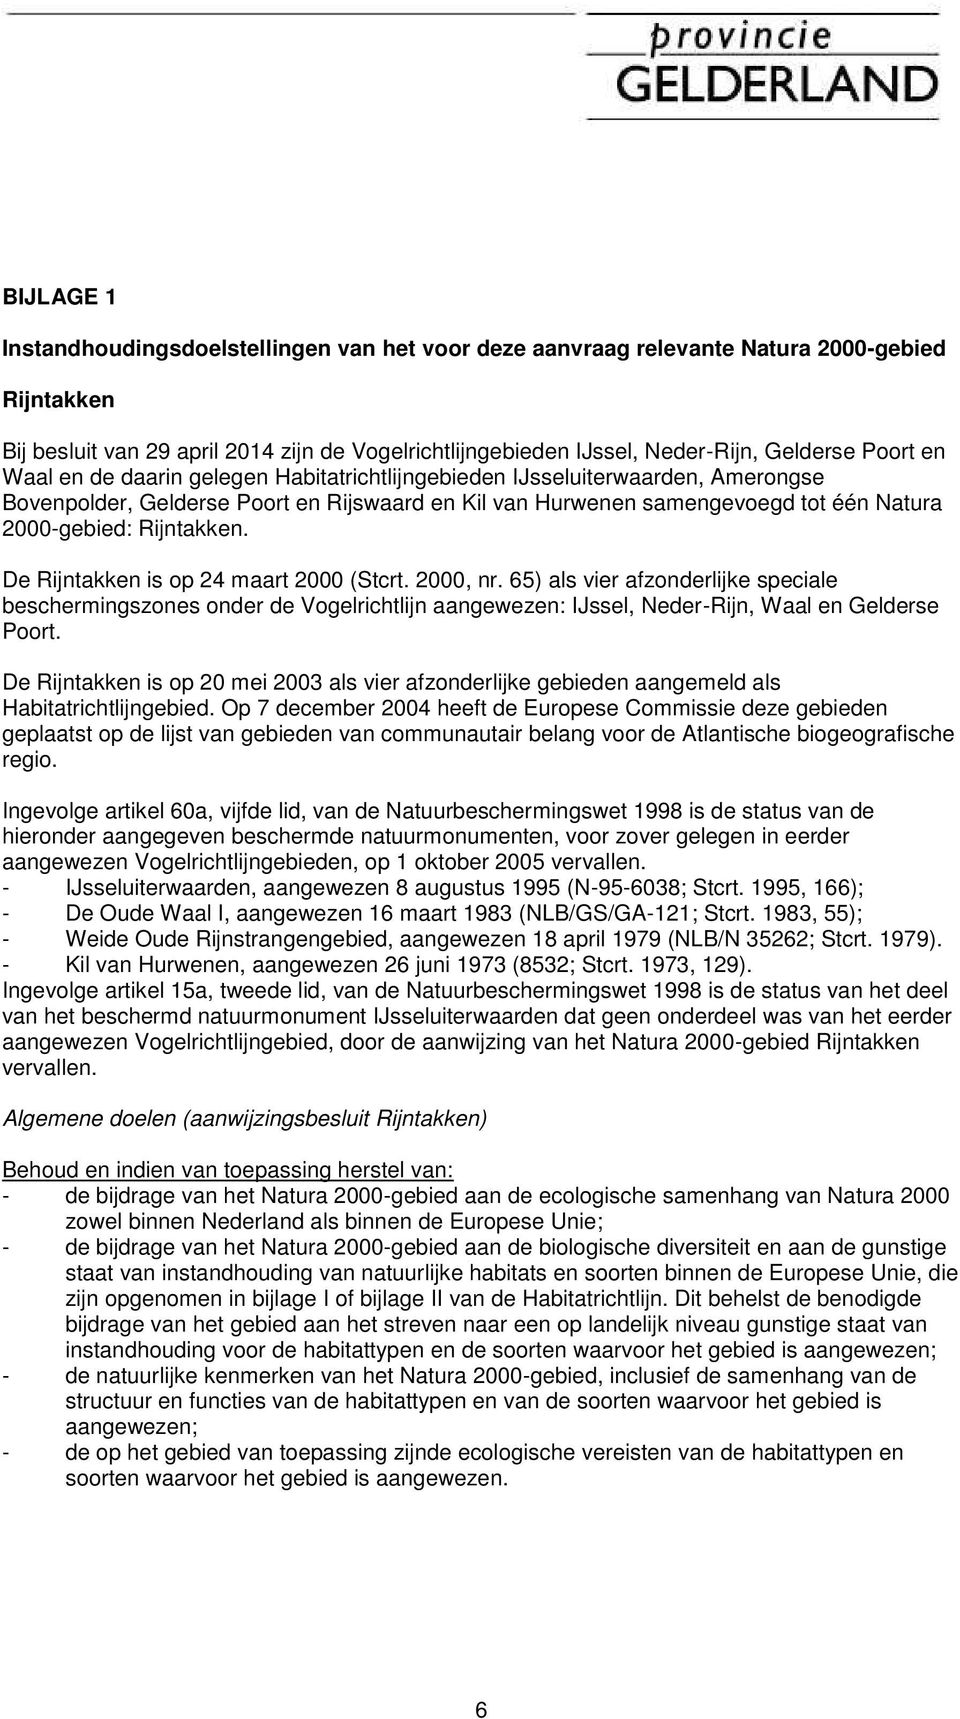 Rijntakken. De Rijntakken is op 24 maart 2000 (Stcrt. 2000, nr. 65) als vier afzonderlijke speciale beschermingszones onder de Vogelrichtlijn aangewezen: IJssel, Neder-Rijn, Waal en Gelderse Poort.